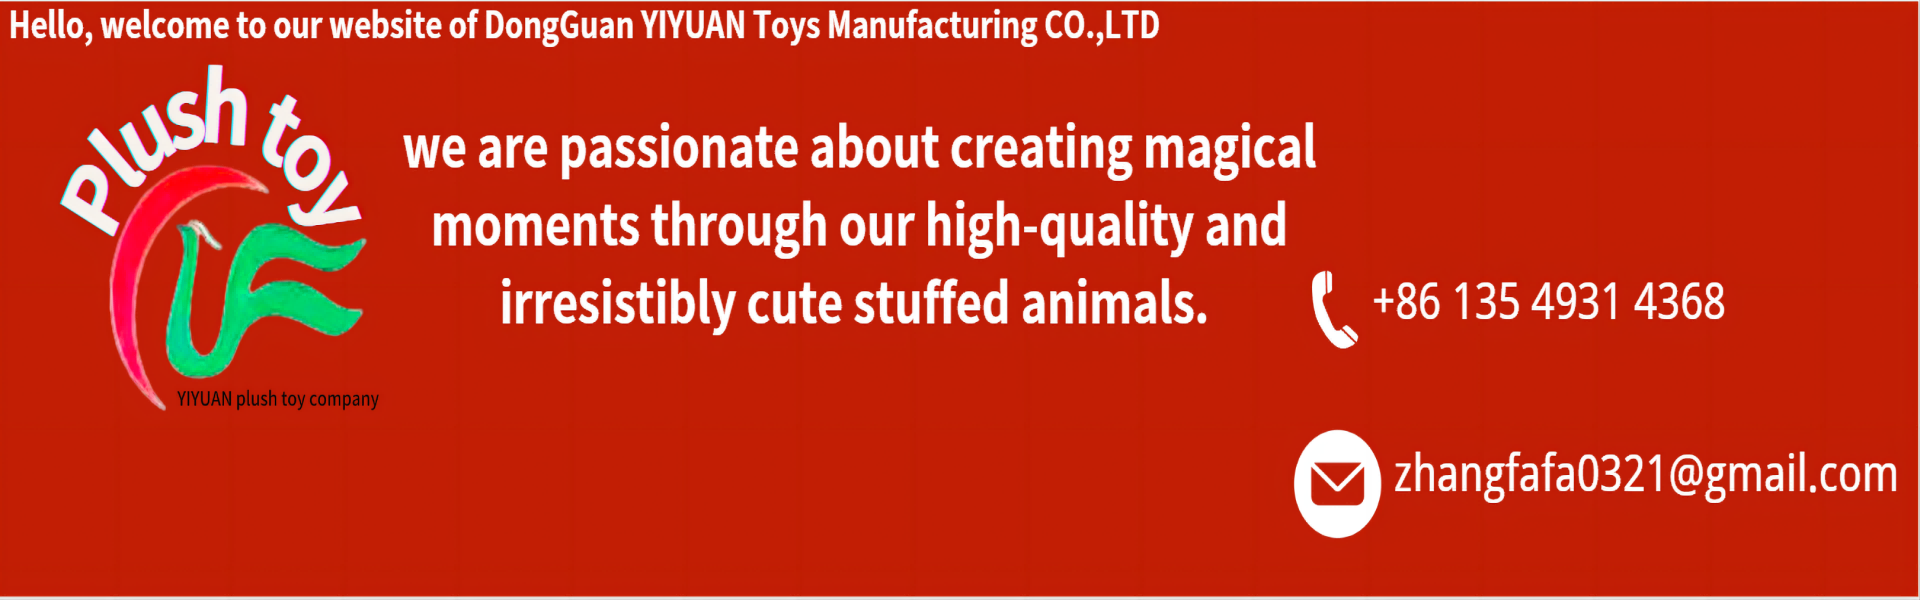 لعبة أفخم ، فرق عالية الجودة ، احترافية,yiyuan plush toy company